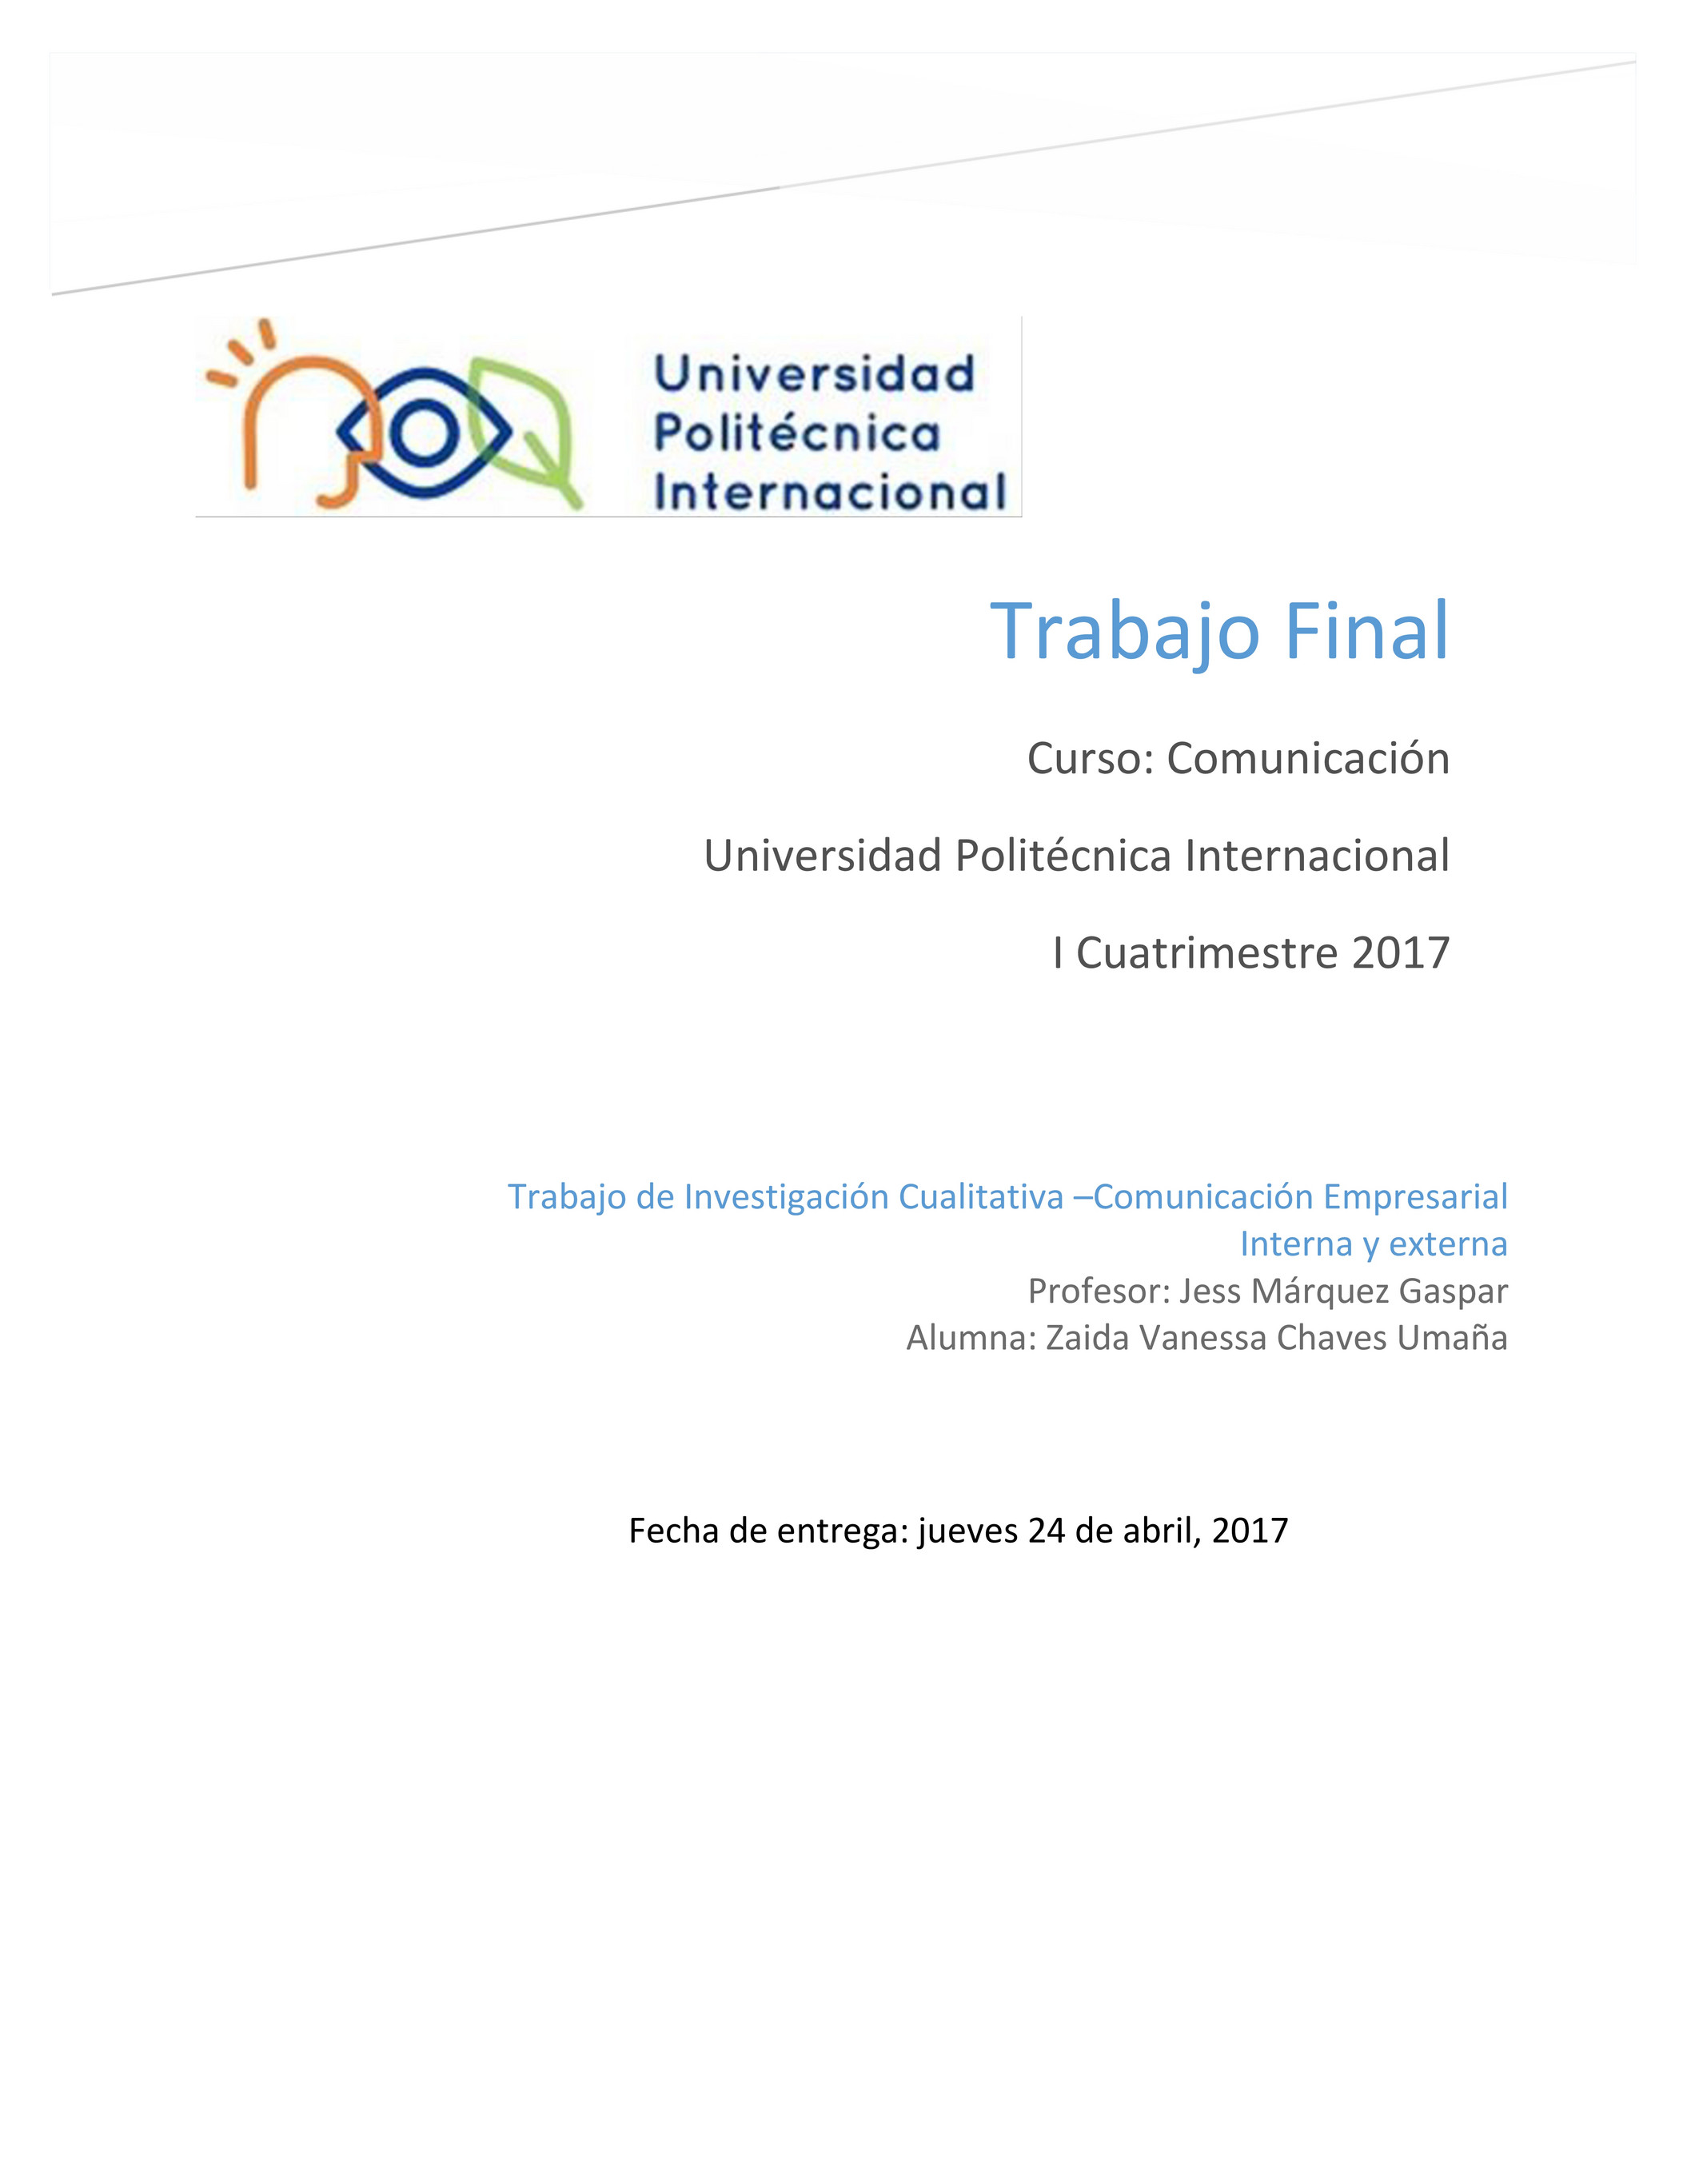 Universidad Politécnica Internacional - Jess Márquez Gaspar - Comunicación  - Proyecto Final de Ejemplo - Página 1 - Created with 